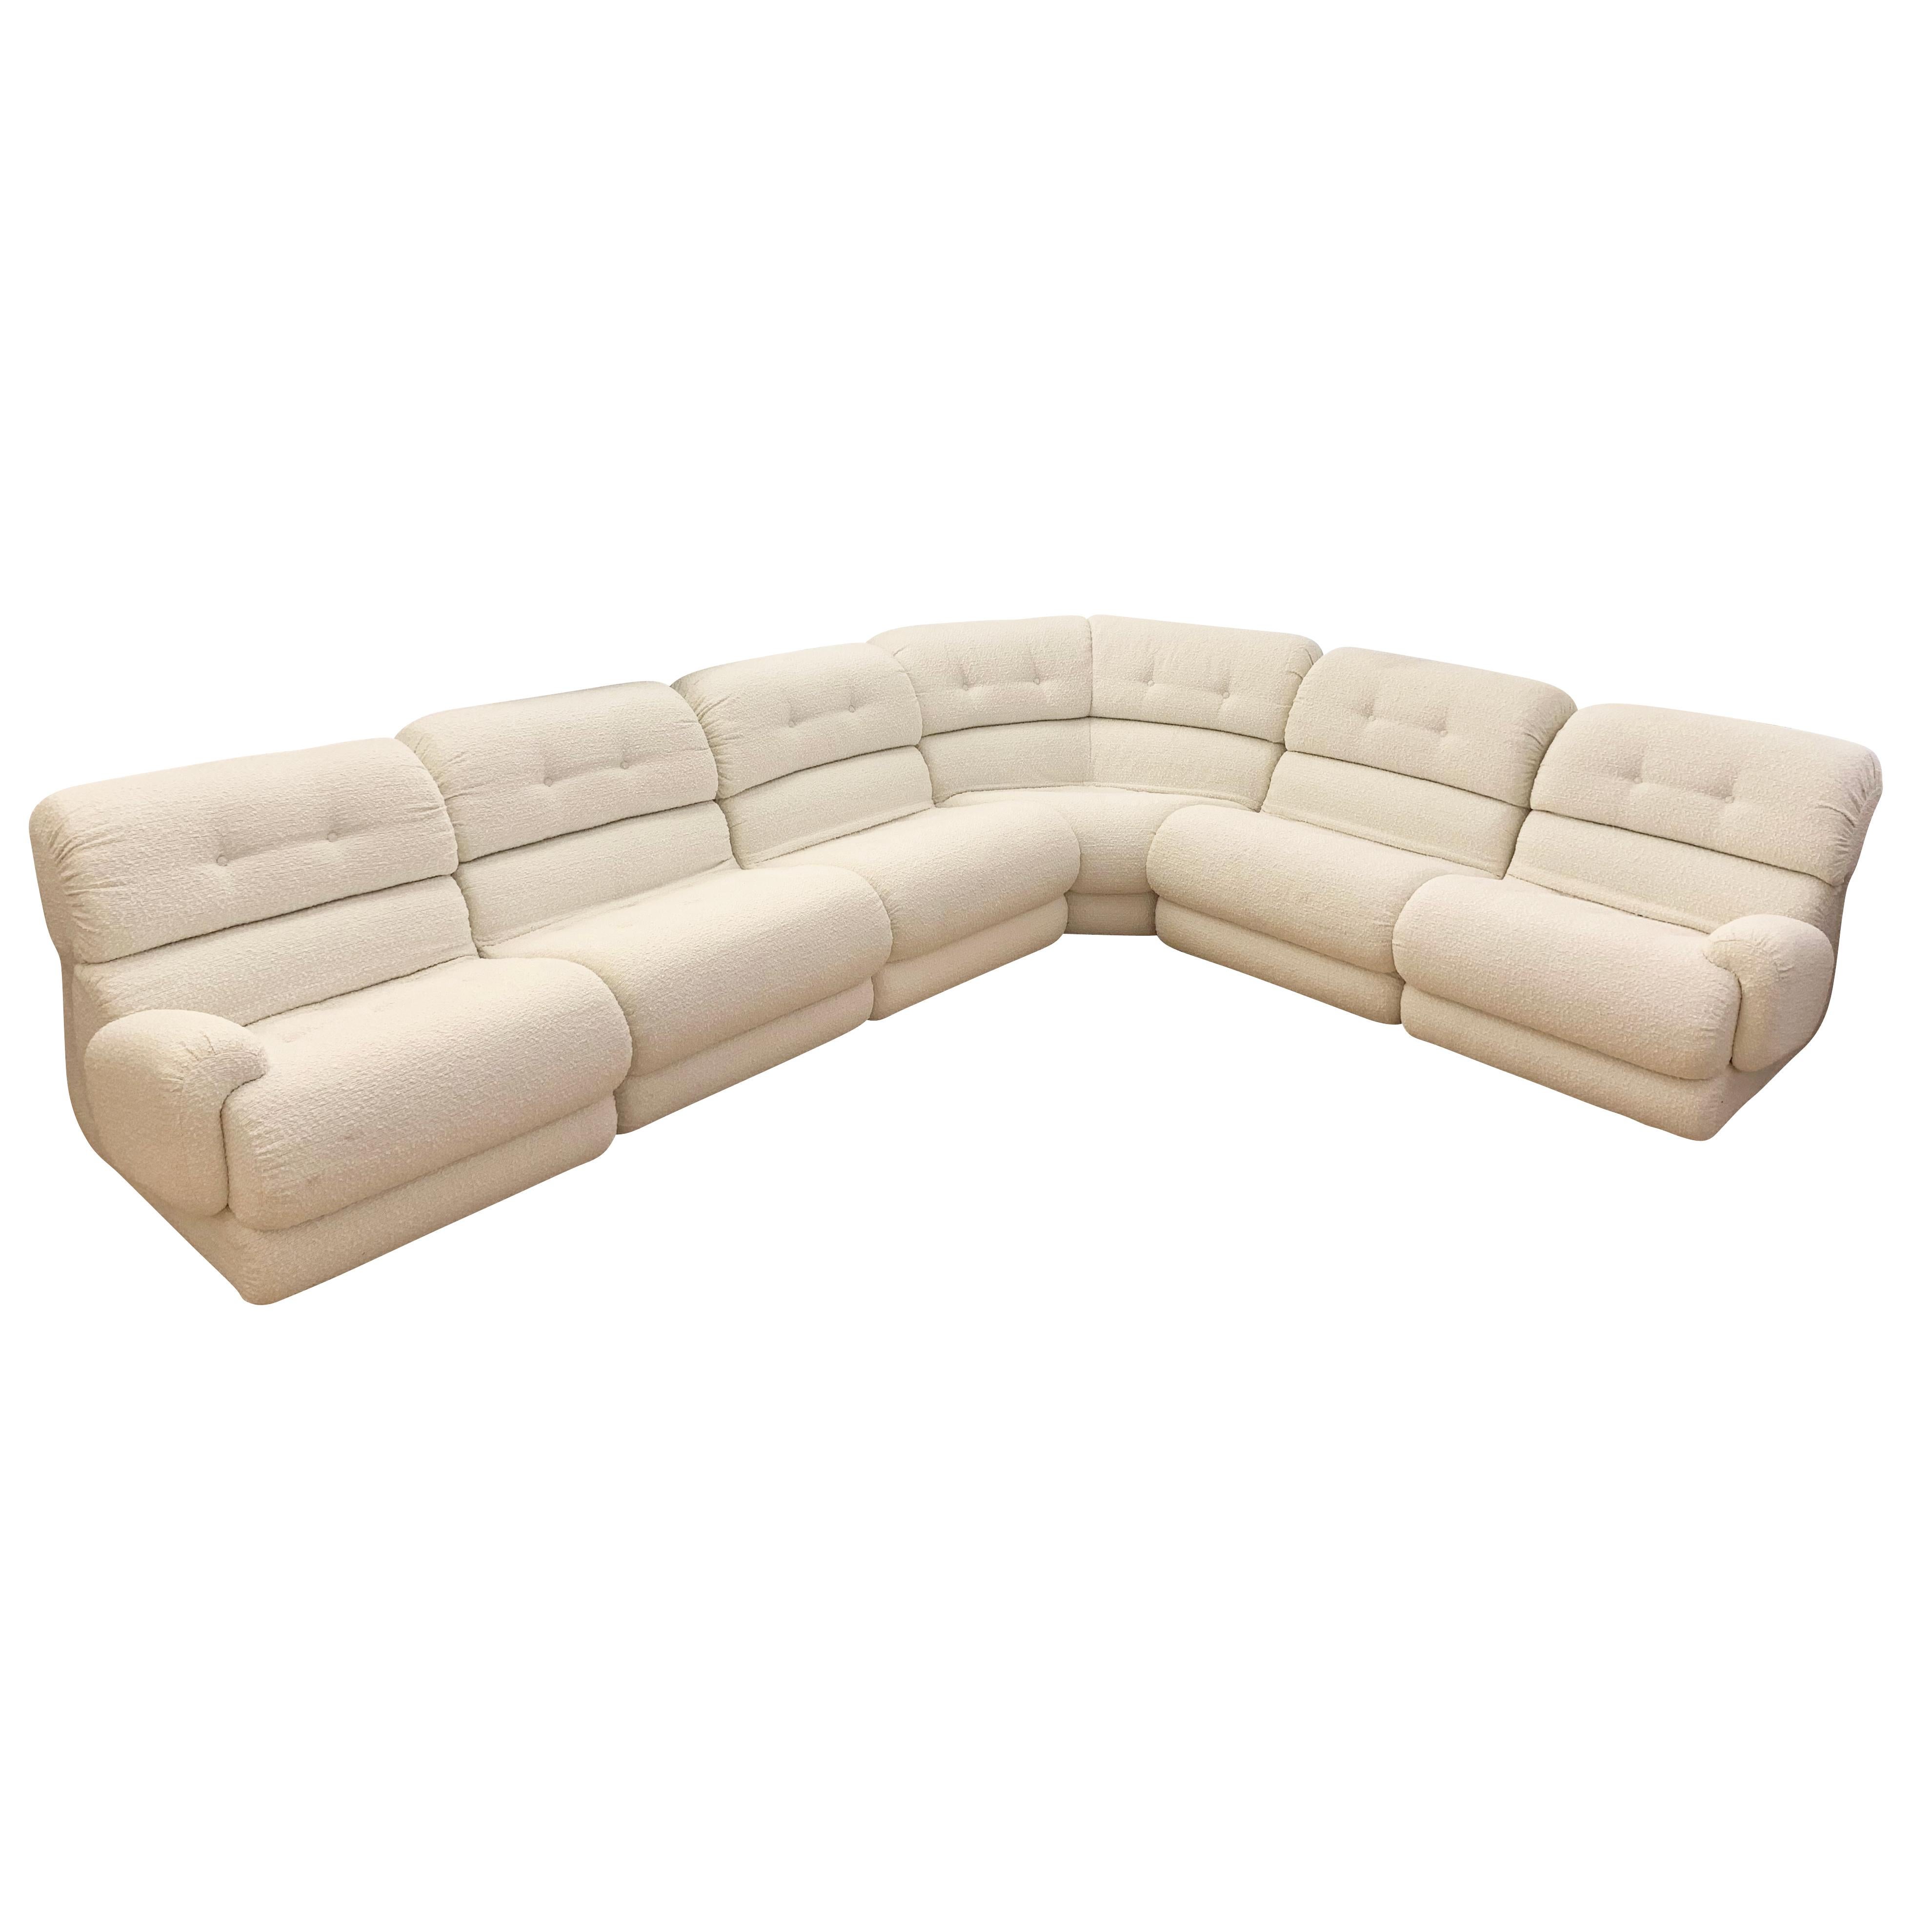 Italienisches Mid-Century-Sofa, bezogen mit einem cremefarbenen Boucle-Stoff. Jedes Teil kann für den individuellen Gebrauch oder zur Erstellung verschiedener Layouts leicht getrennt werden. Besteht aus den folgenden Stücken.

1 eckiger Abschnitt: